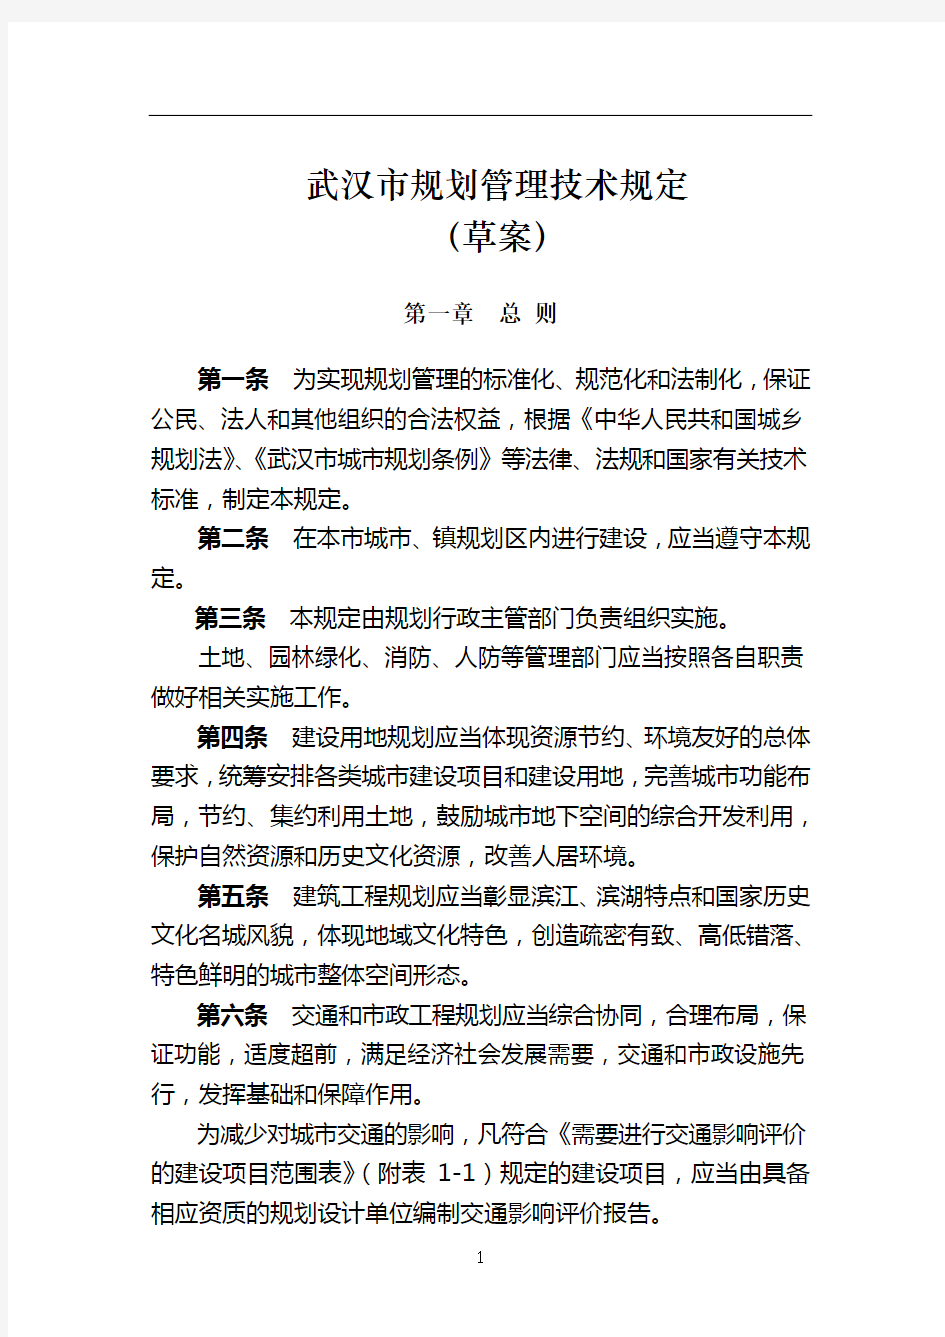 武汉市城市规划管理的相关规定